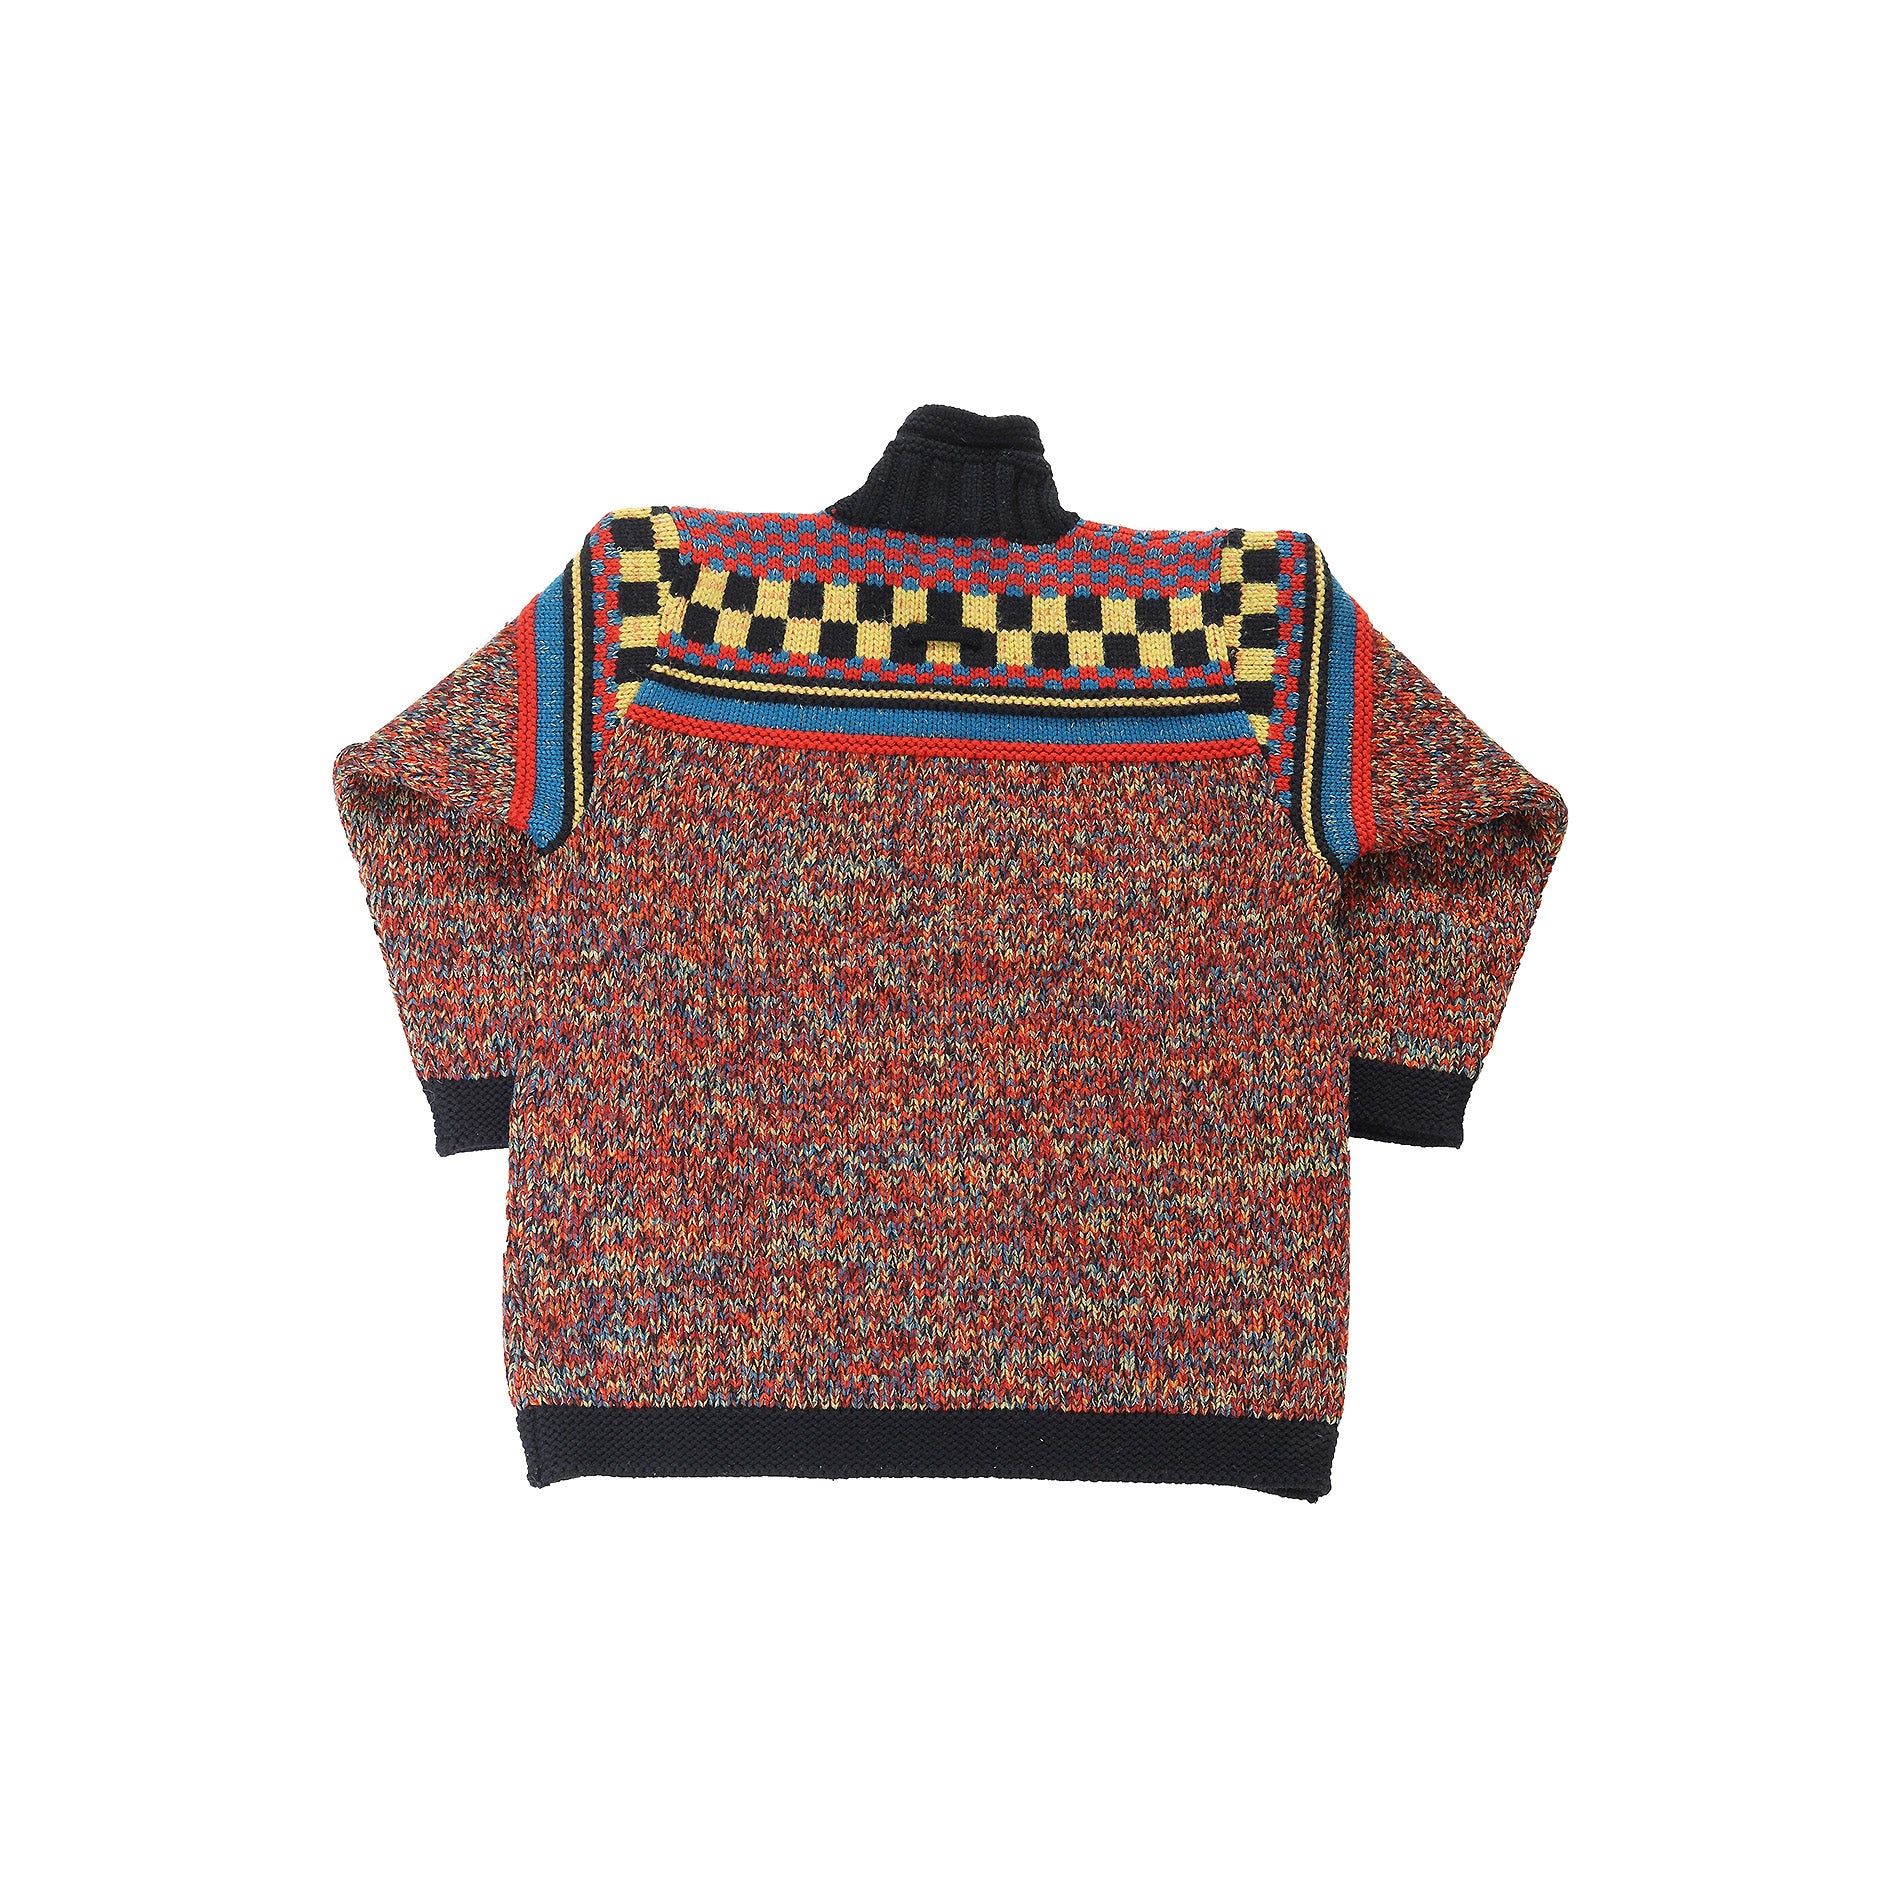 Jean Paul Gaultier FW1995 Metallic Multicolor Checkerboard Knit Sweater